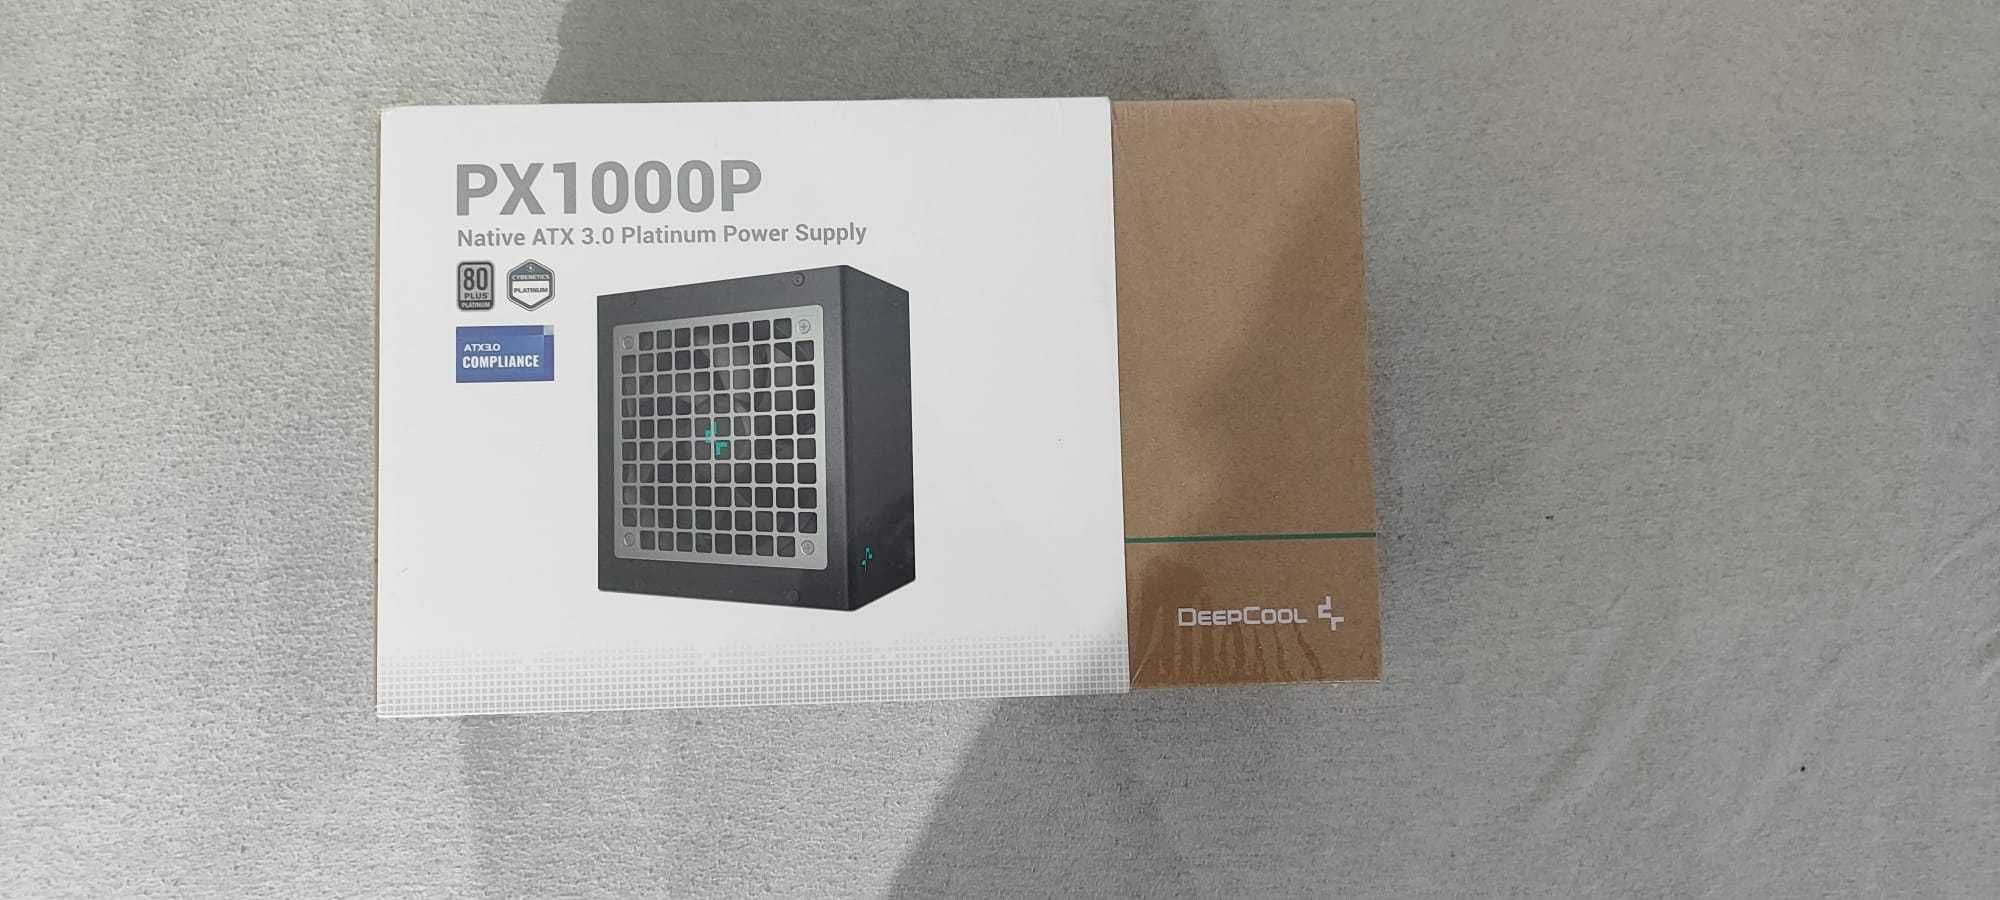 Sursa PC DeepCool PX1000P Native ATX 3.0 Platinum